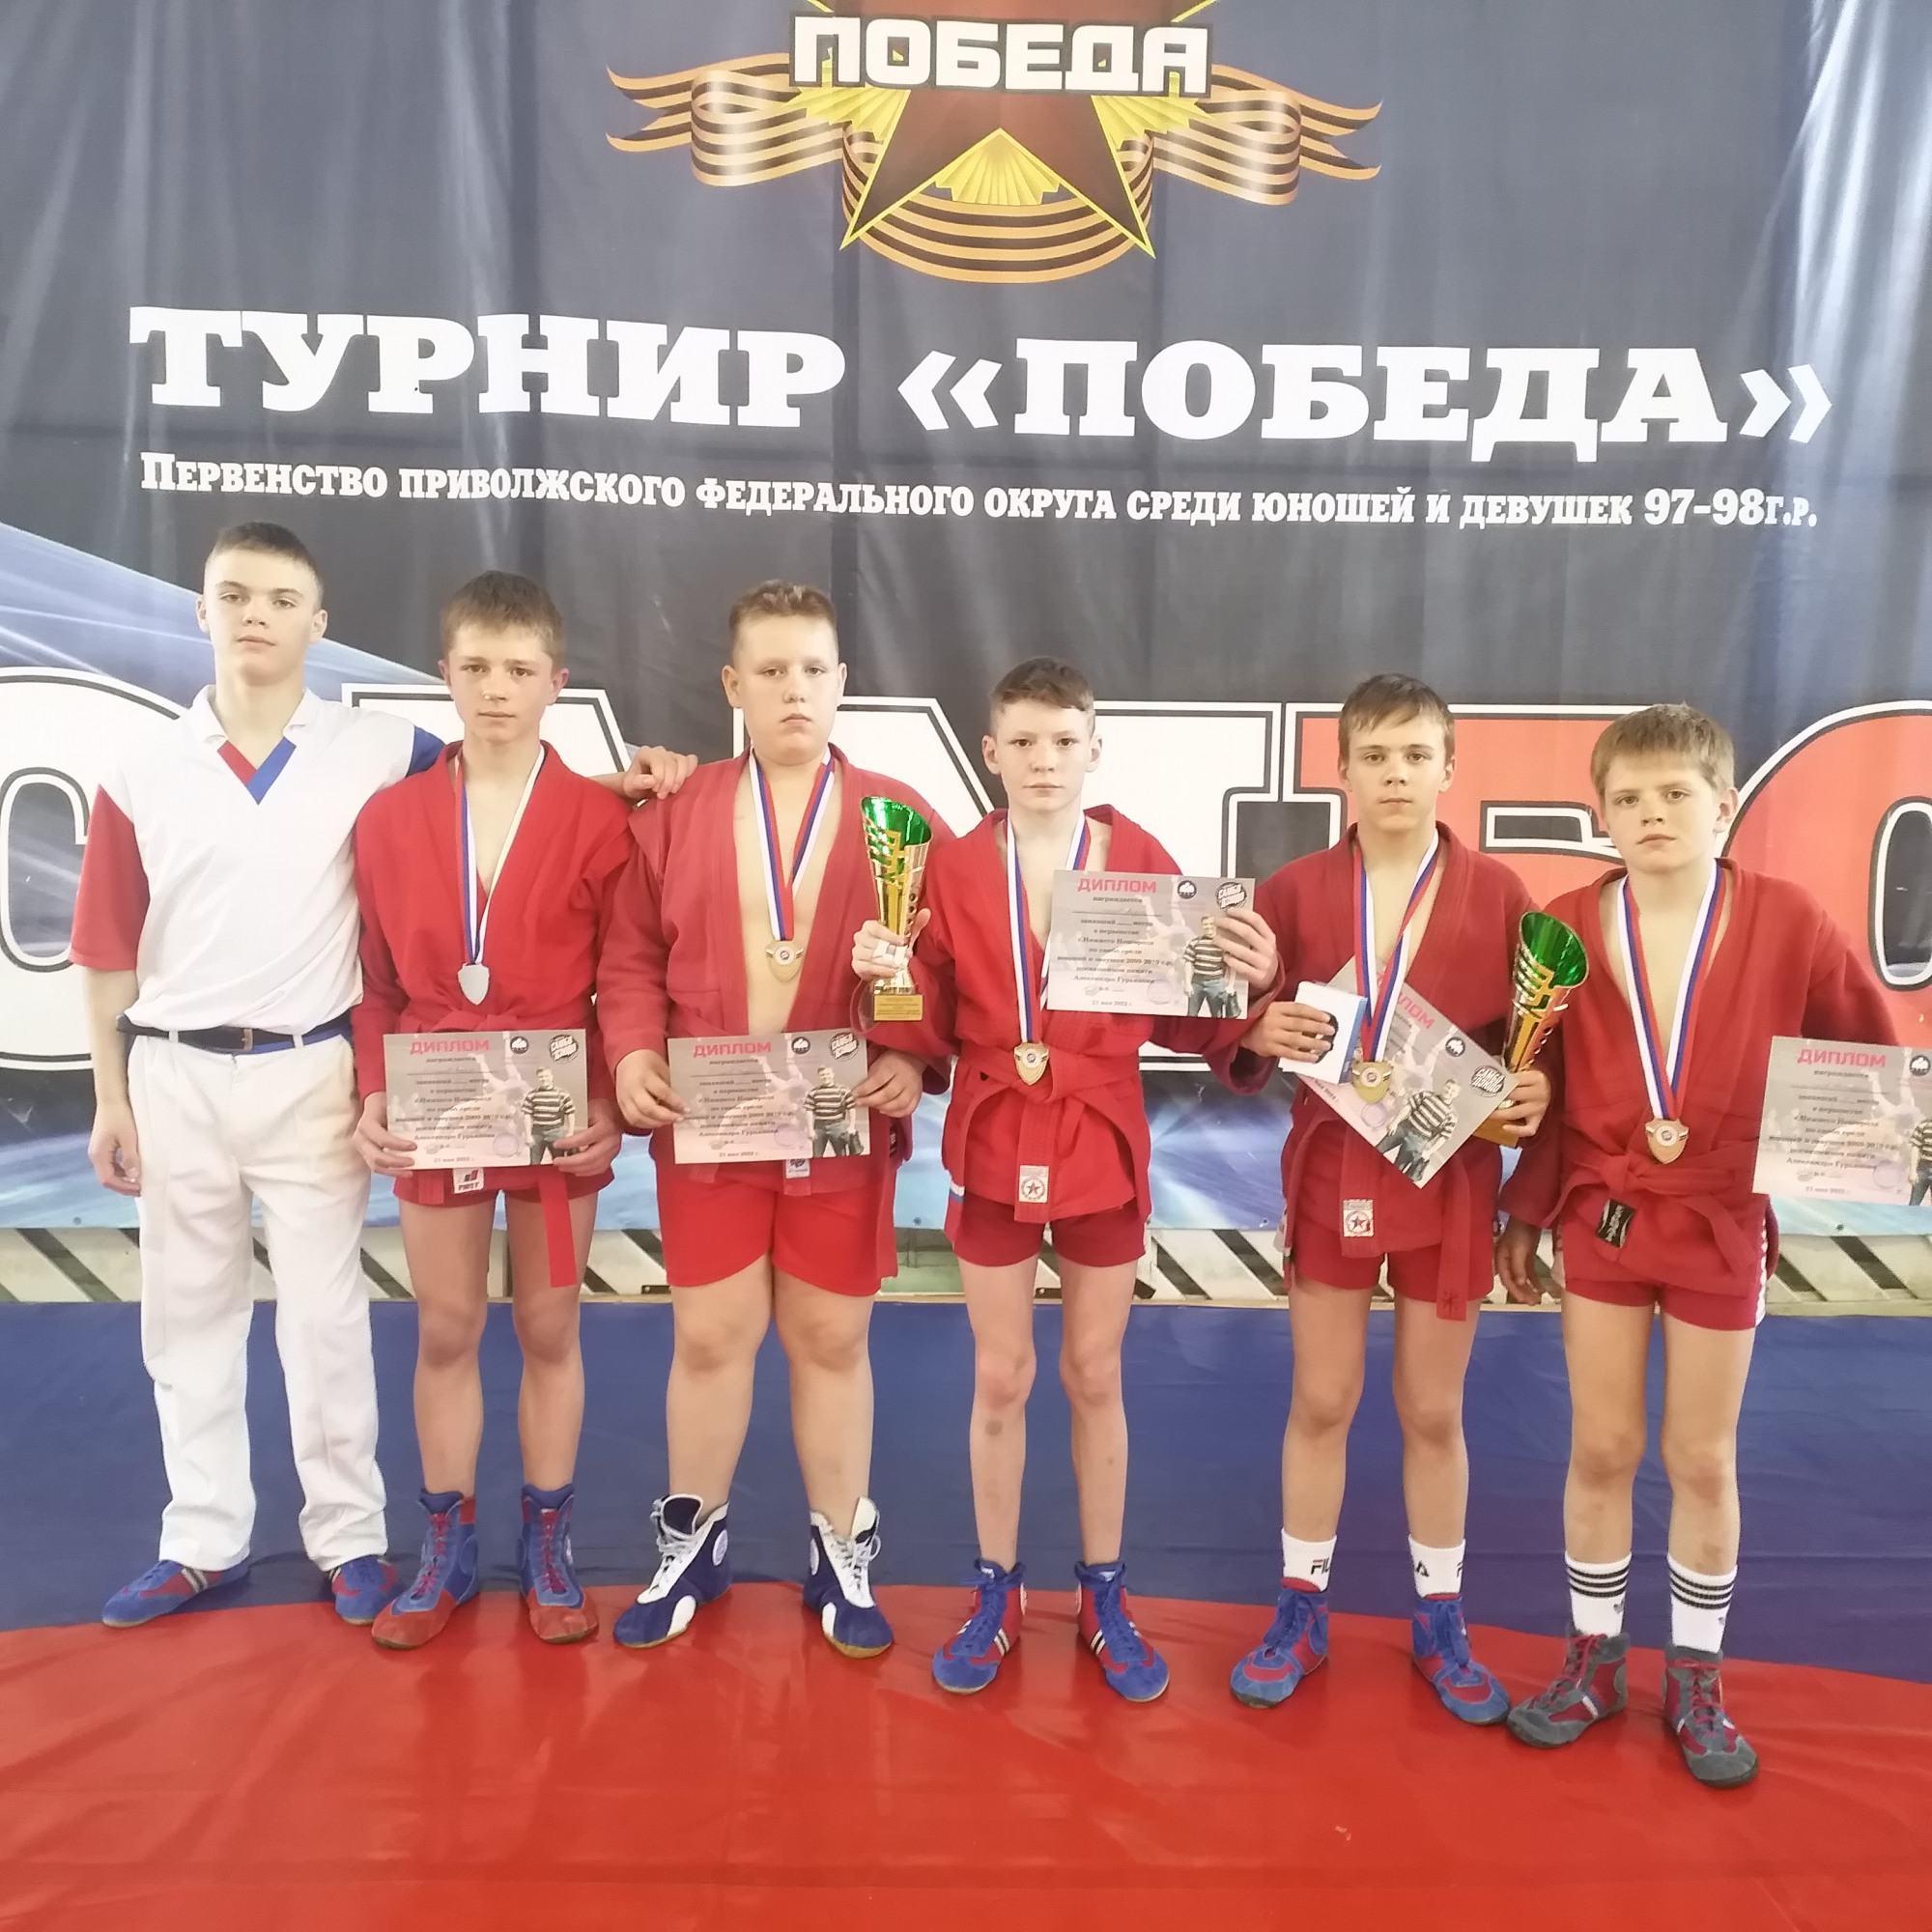 Юные самбисты взяли восемь медалей в Нижнем Новгороде